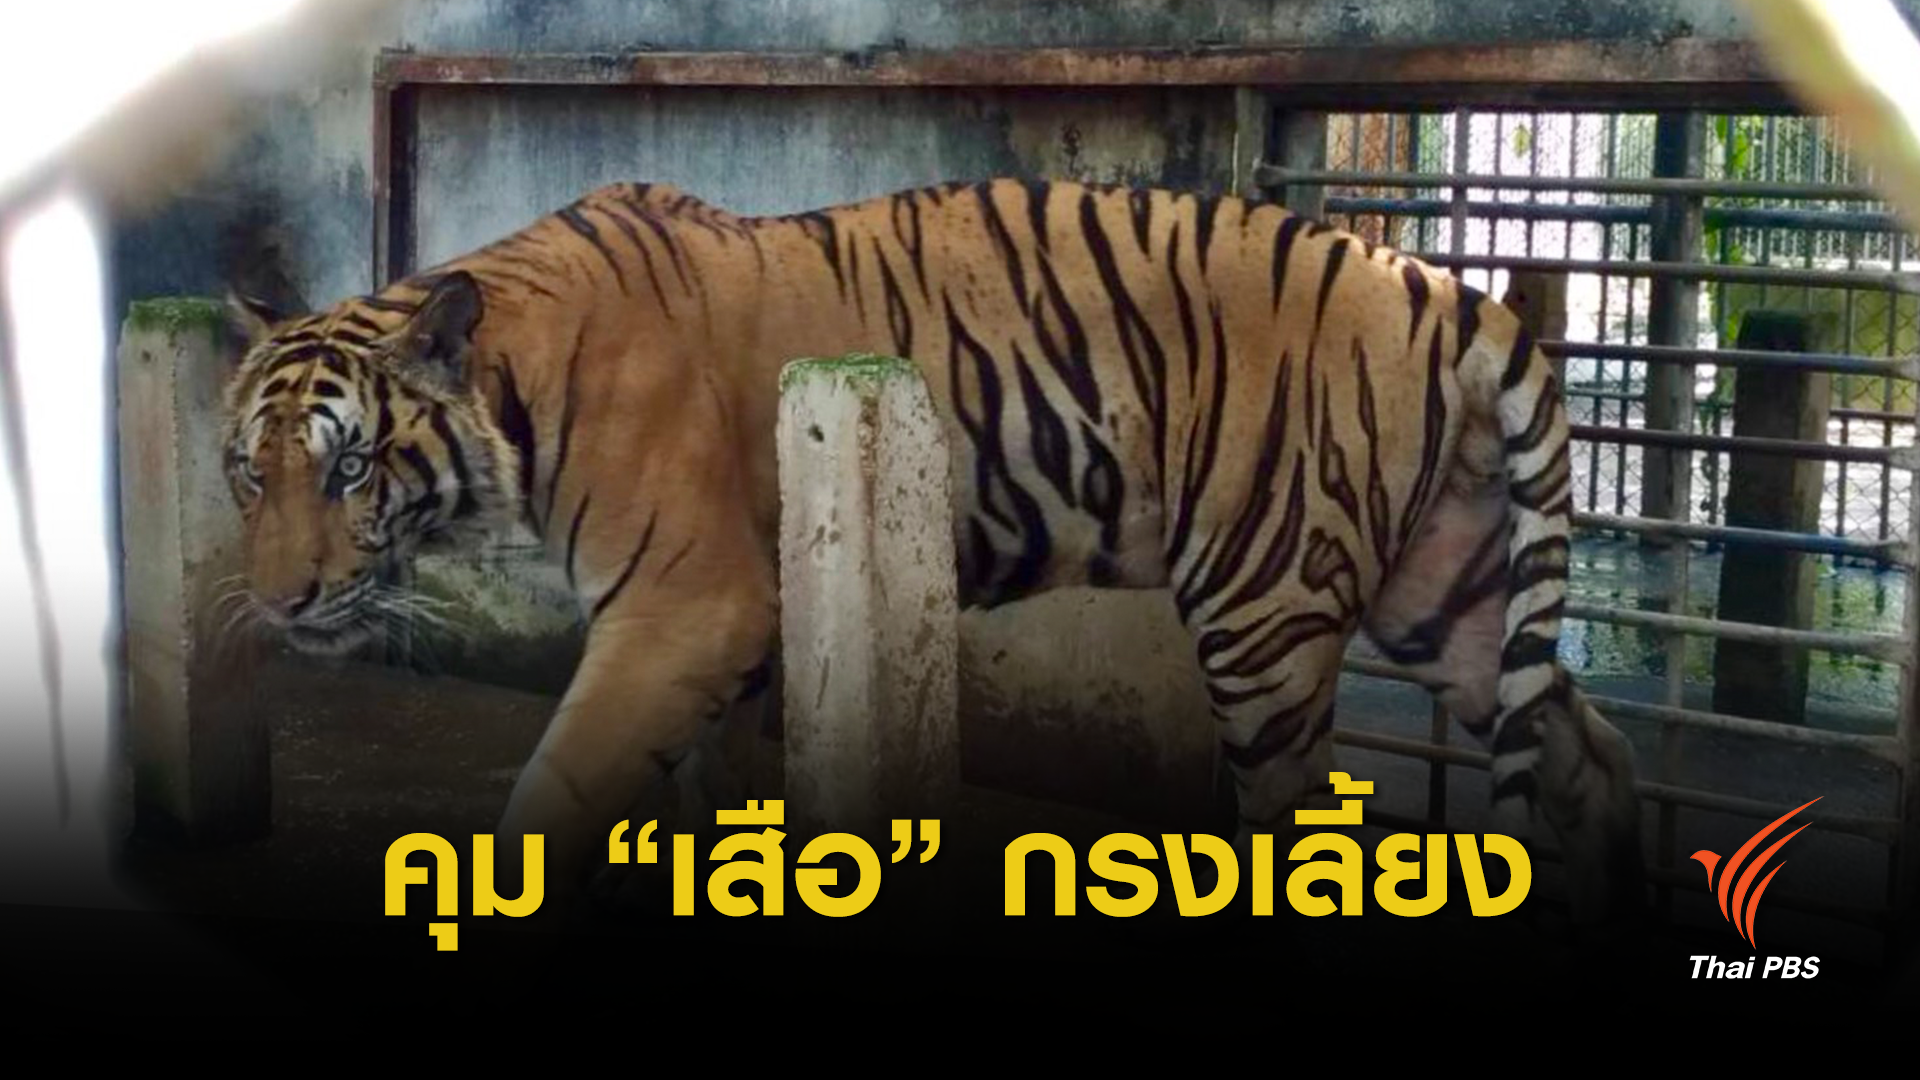 วิกฤต "ไซเตส" จับตาฟาร์มเสือไทยแหล่งค้า 